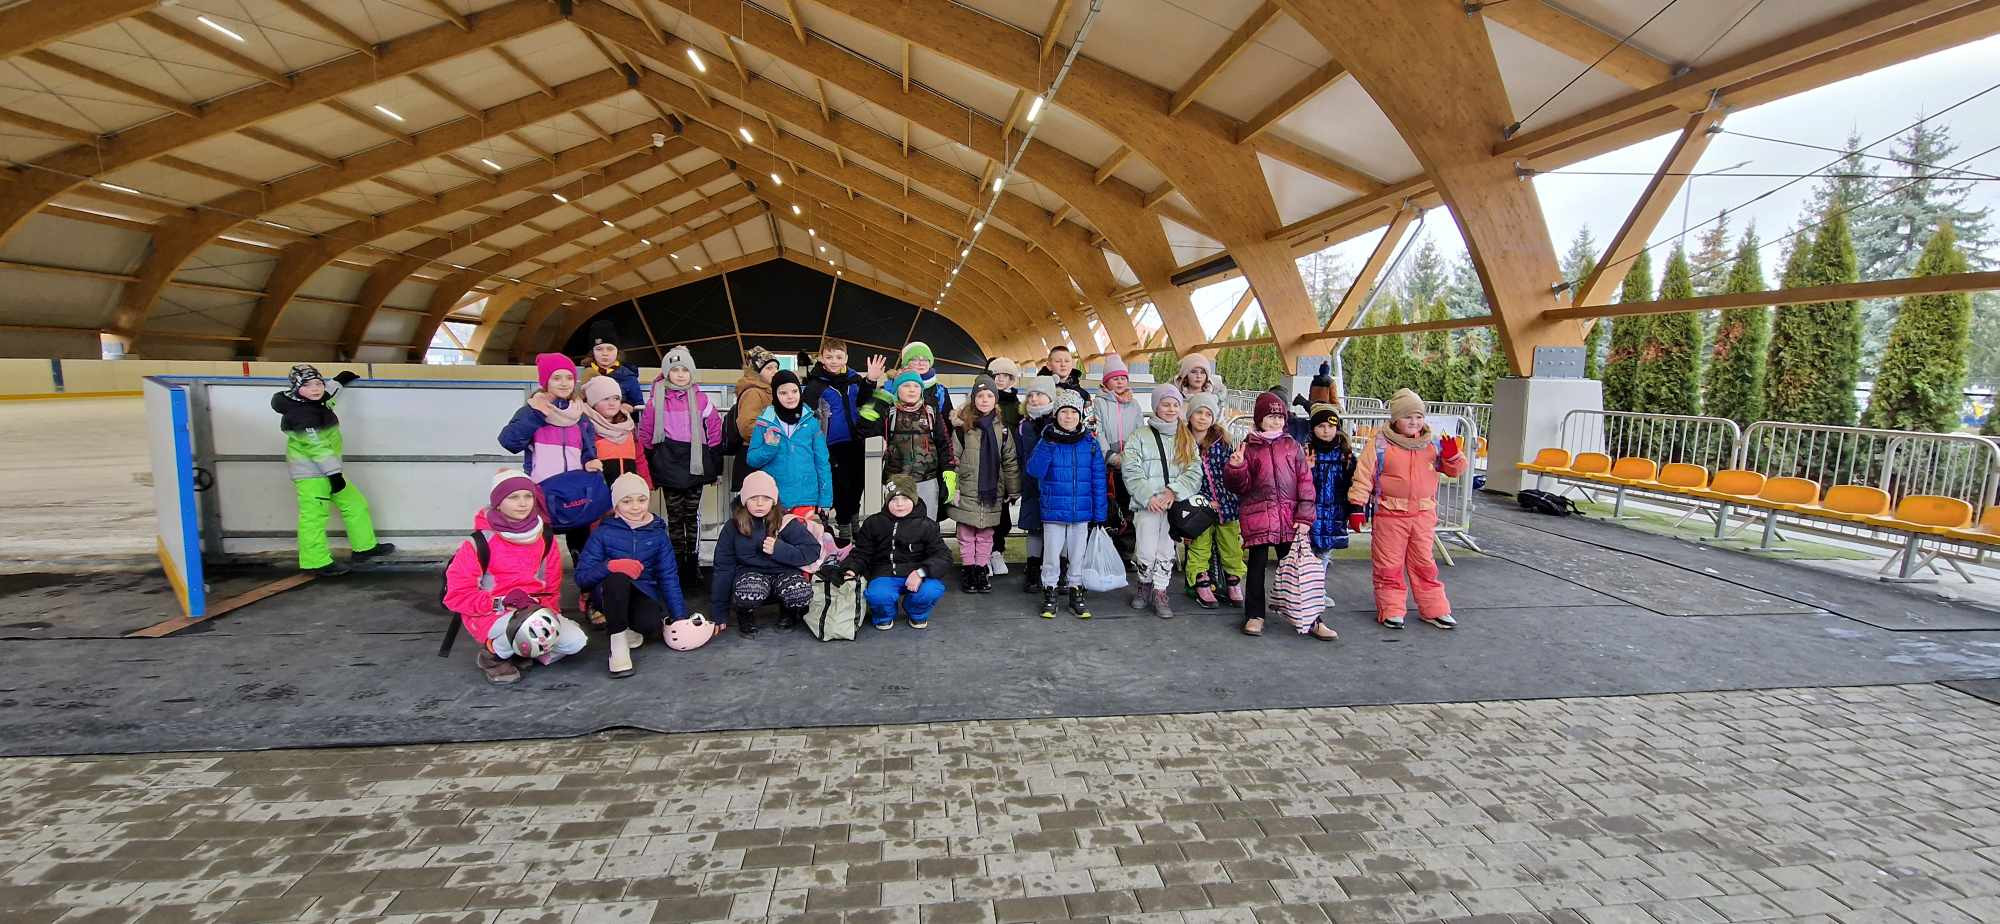 Grupowe zdjęcie dzieci na lodowisku w Gorlicach